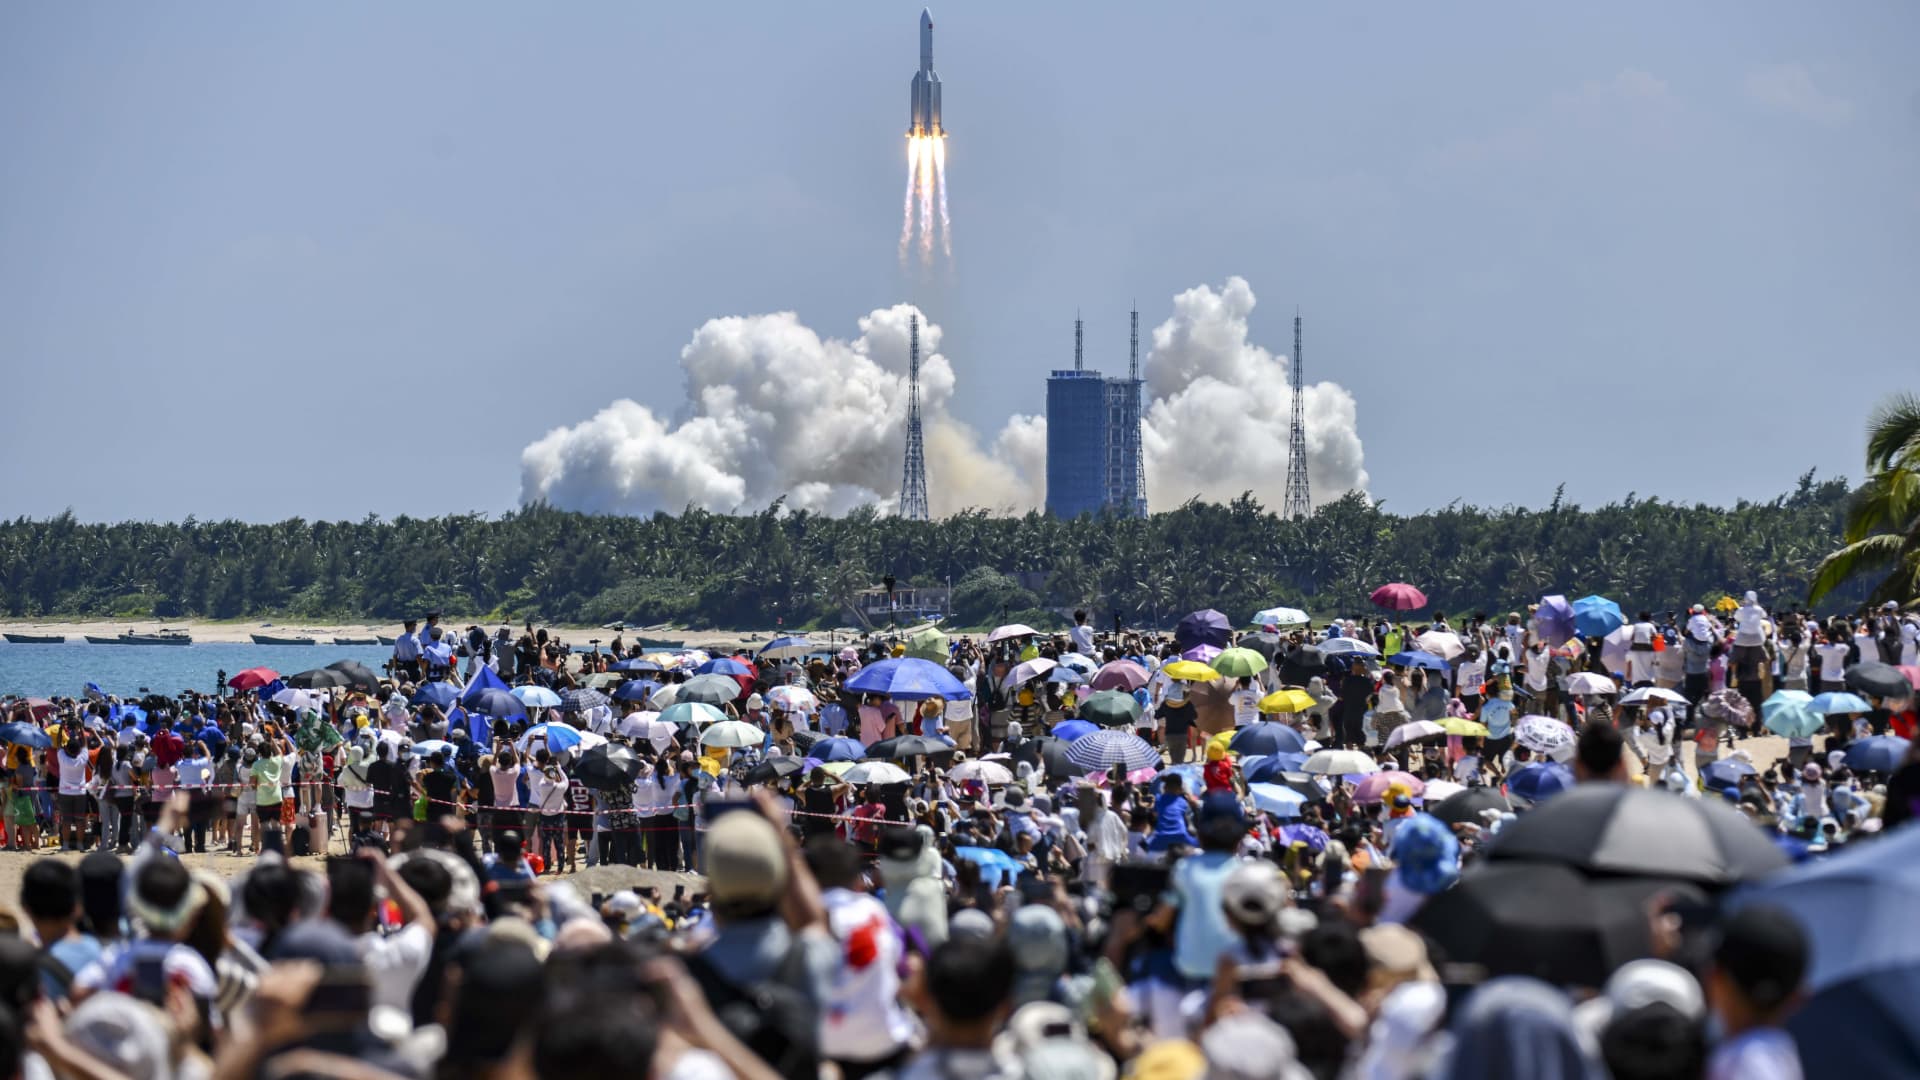 Čínská raketa spadla na Zemi, NASA říká, že Peking informace nesdílel